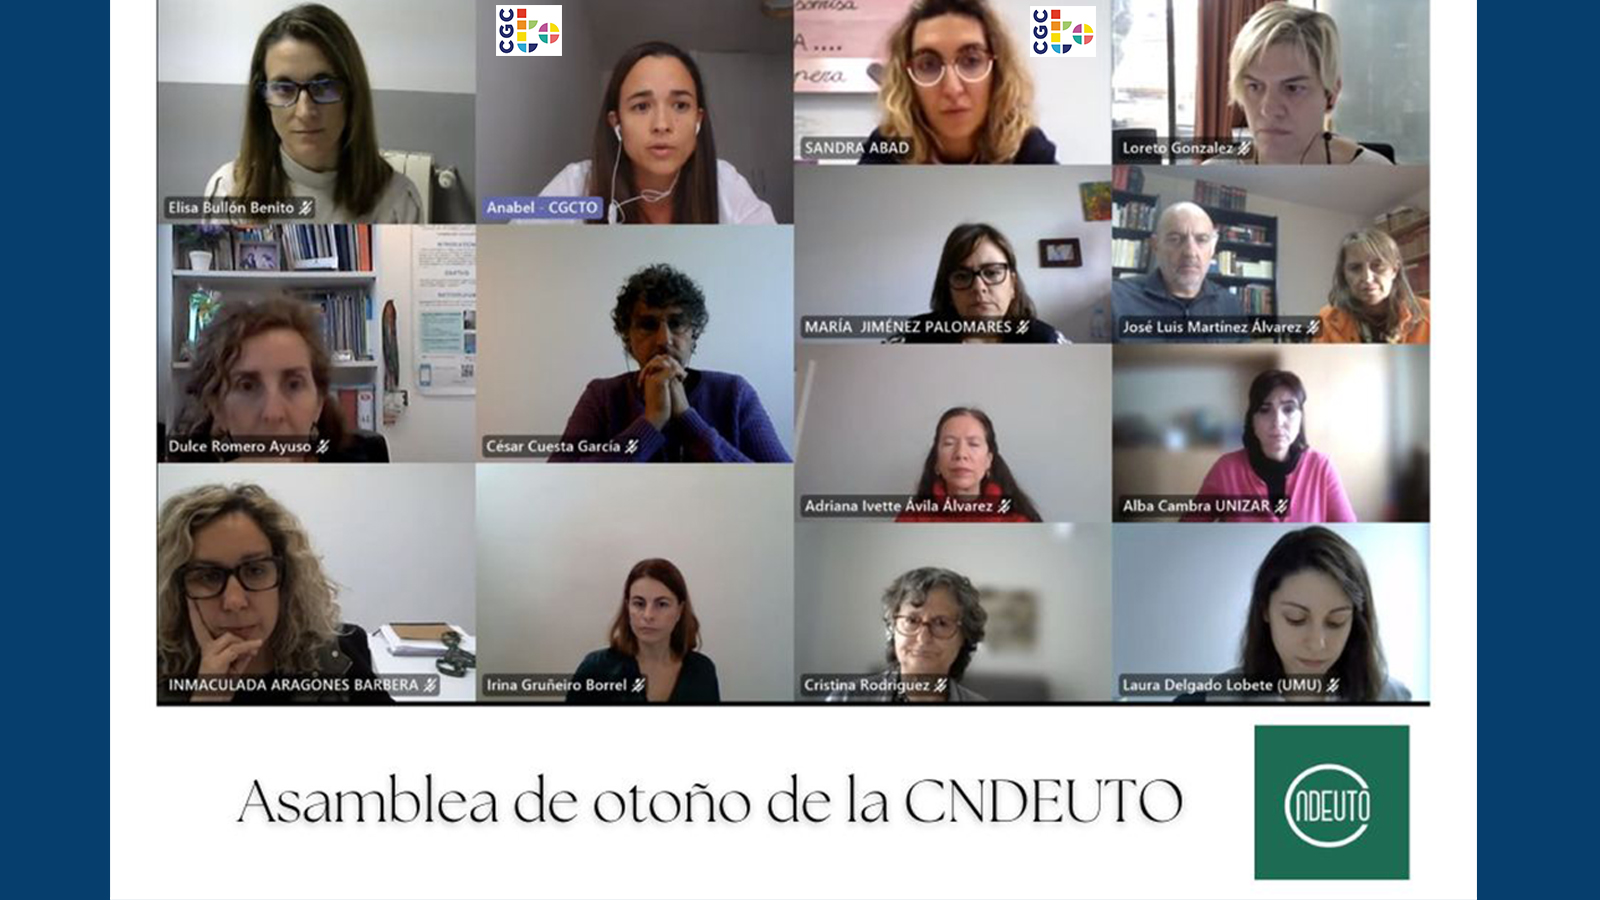 Ana Isabel Martínez Muñoz, y nuestra vicepresidenta, Sandra Abad Galdeano participan en la Asamblea de otoño de la CNDEUTO, para explicar el sistema de acreditación de títulos por la #WFOT.